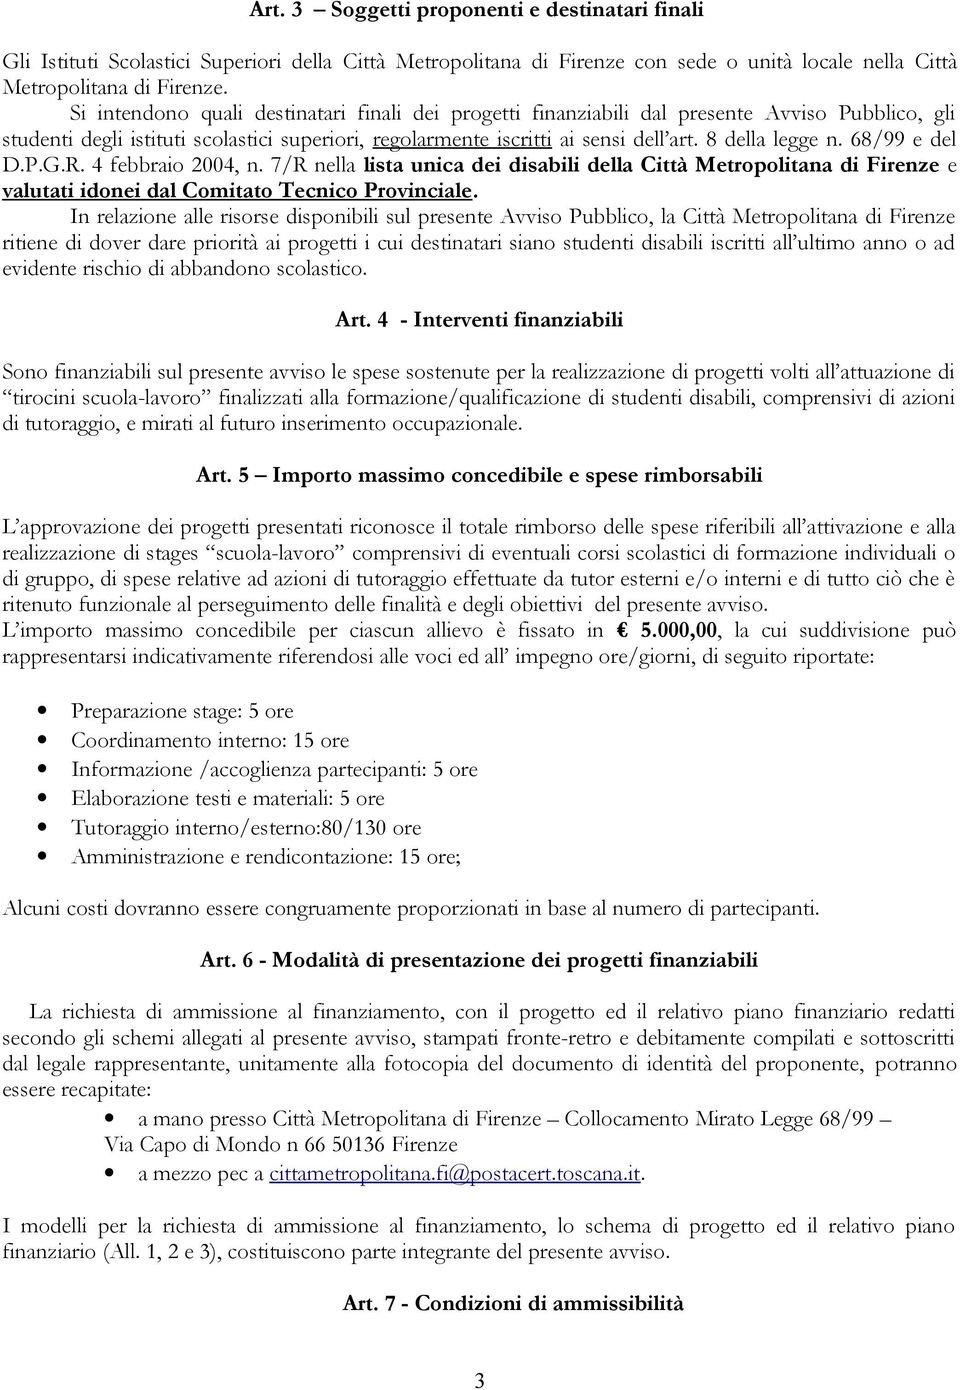 8 della legge n. 68/99 e del D.P.G.R. 4 febbraio 2004, n. 7/R nella lista unica dei disabili della Città Metropolitana di Firenze e valutati idonei dal Comitato Tecnico Provinciale.